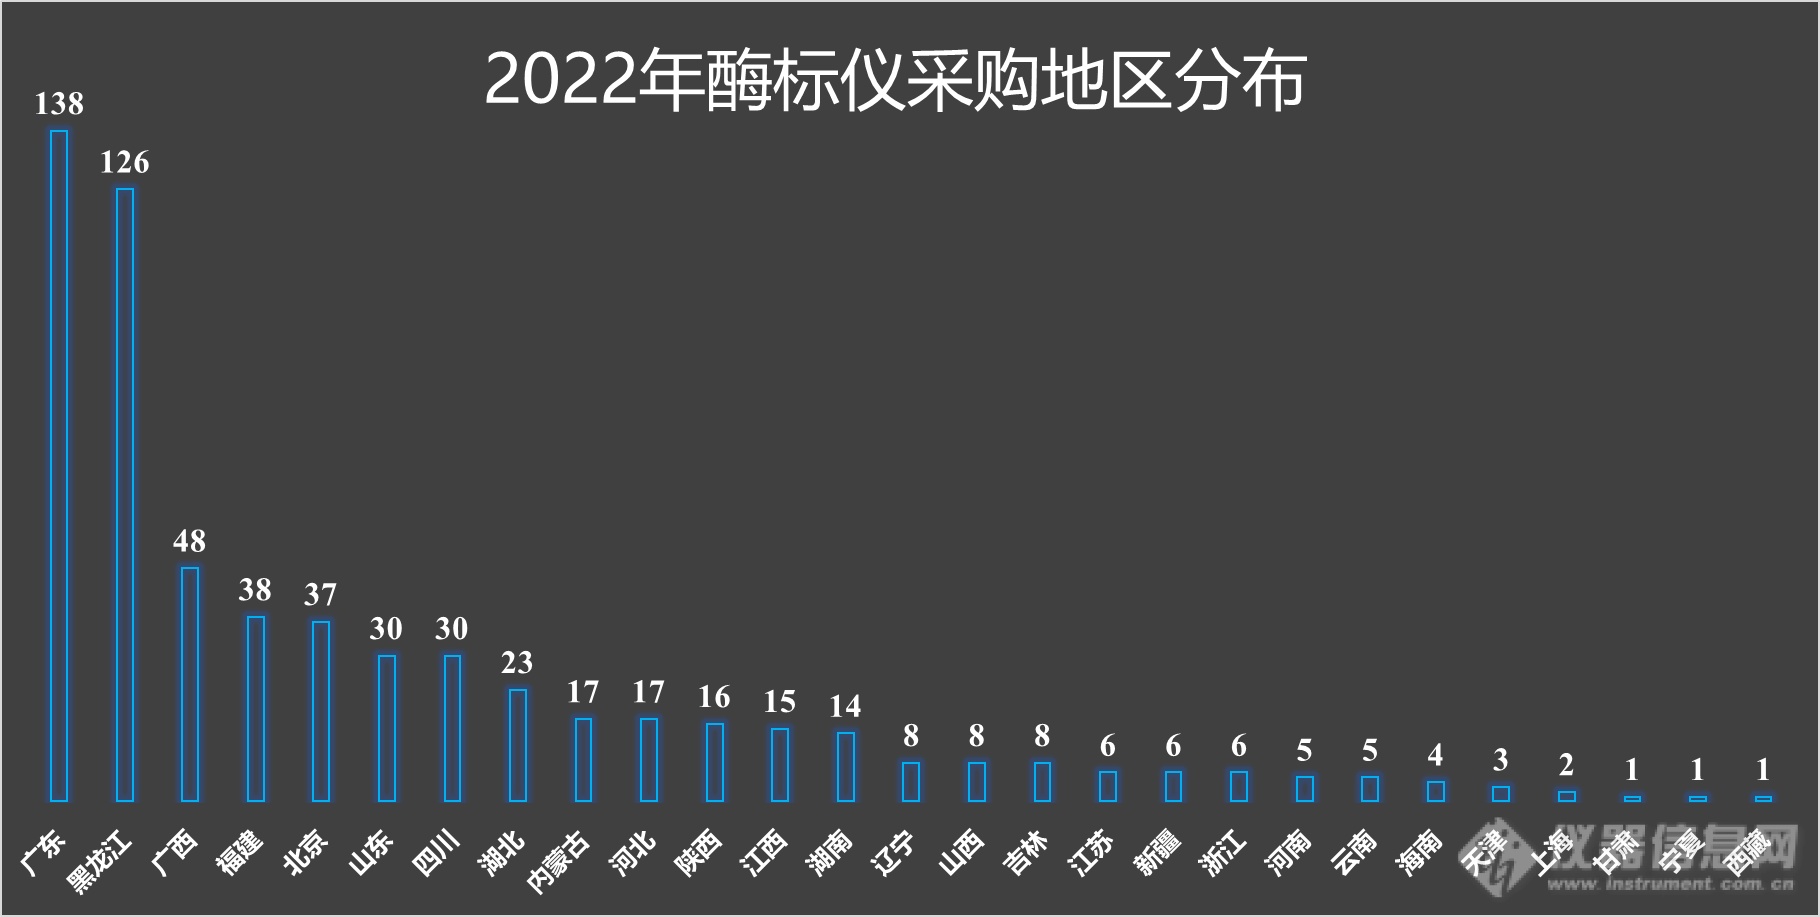 ​2022年酶标仪中标盘点：进口数量竟少于国产，这家国产挺进TOP5